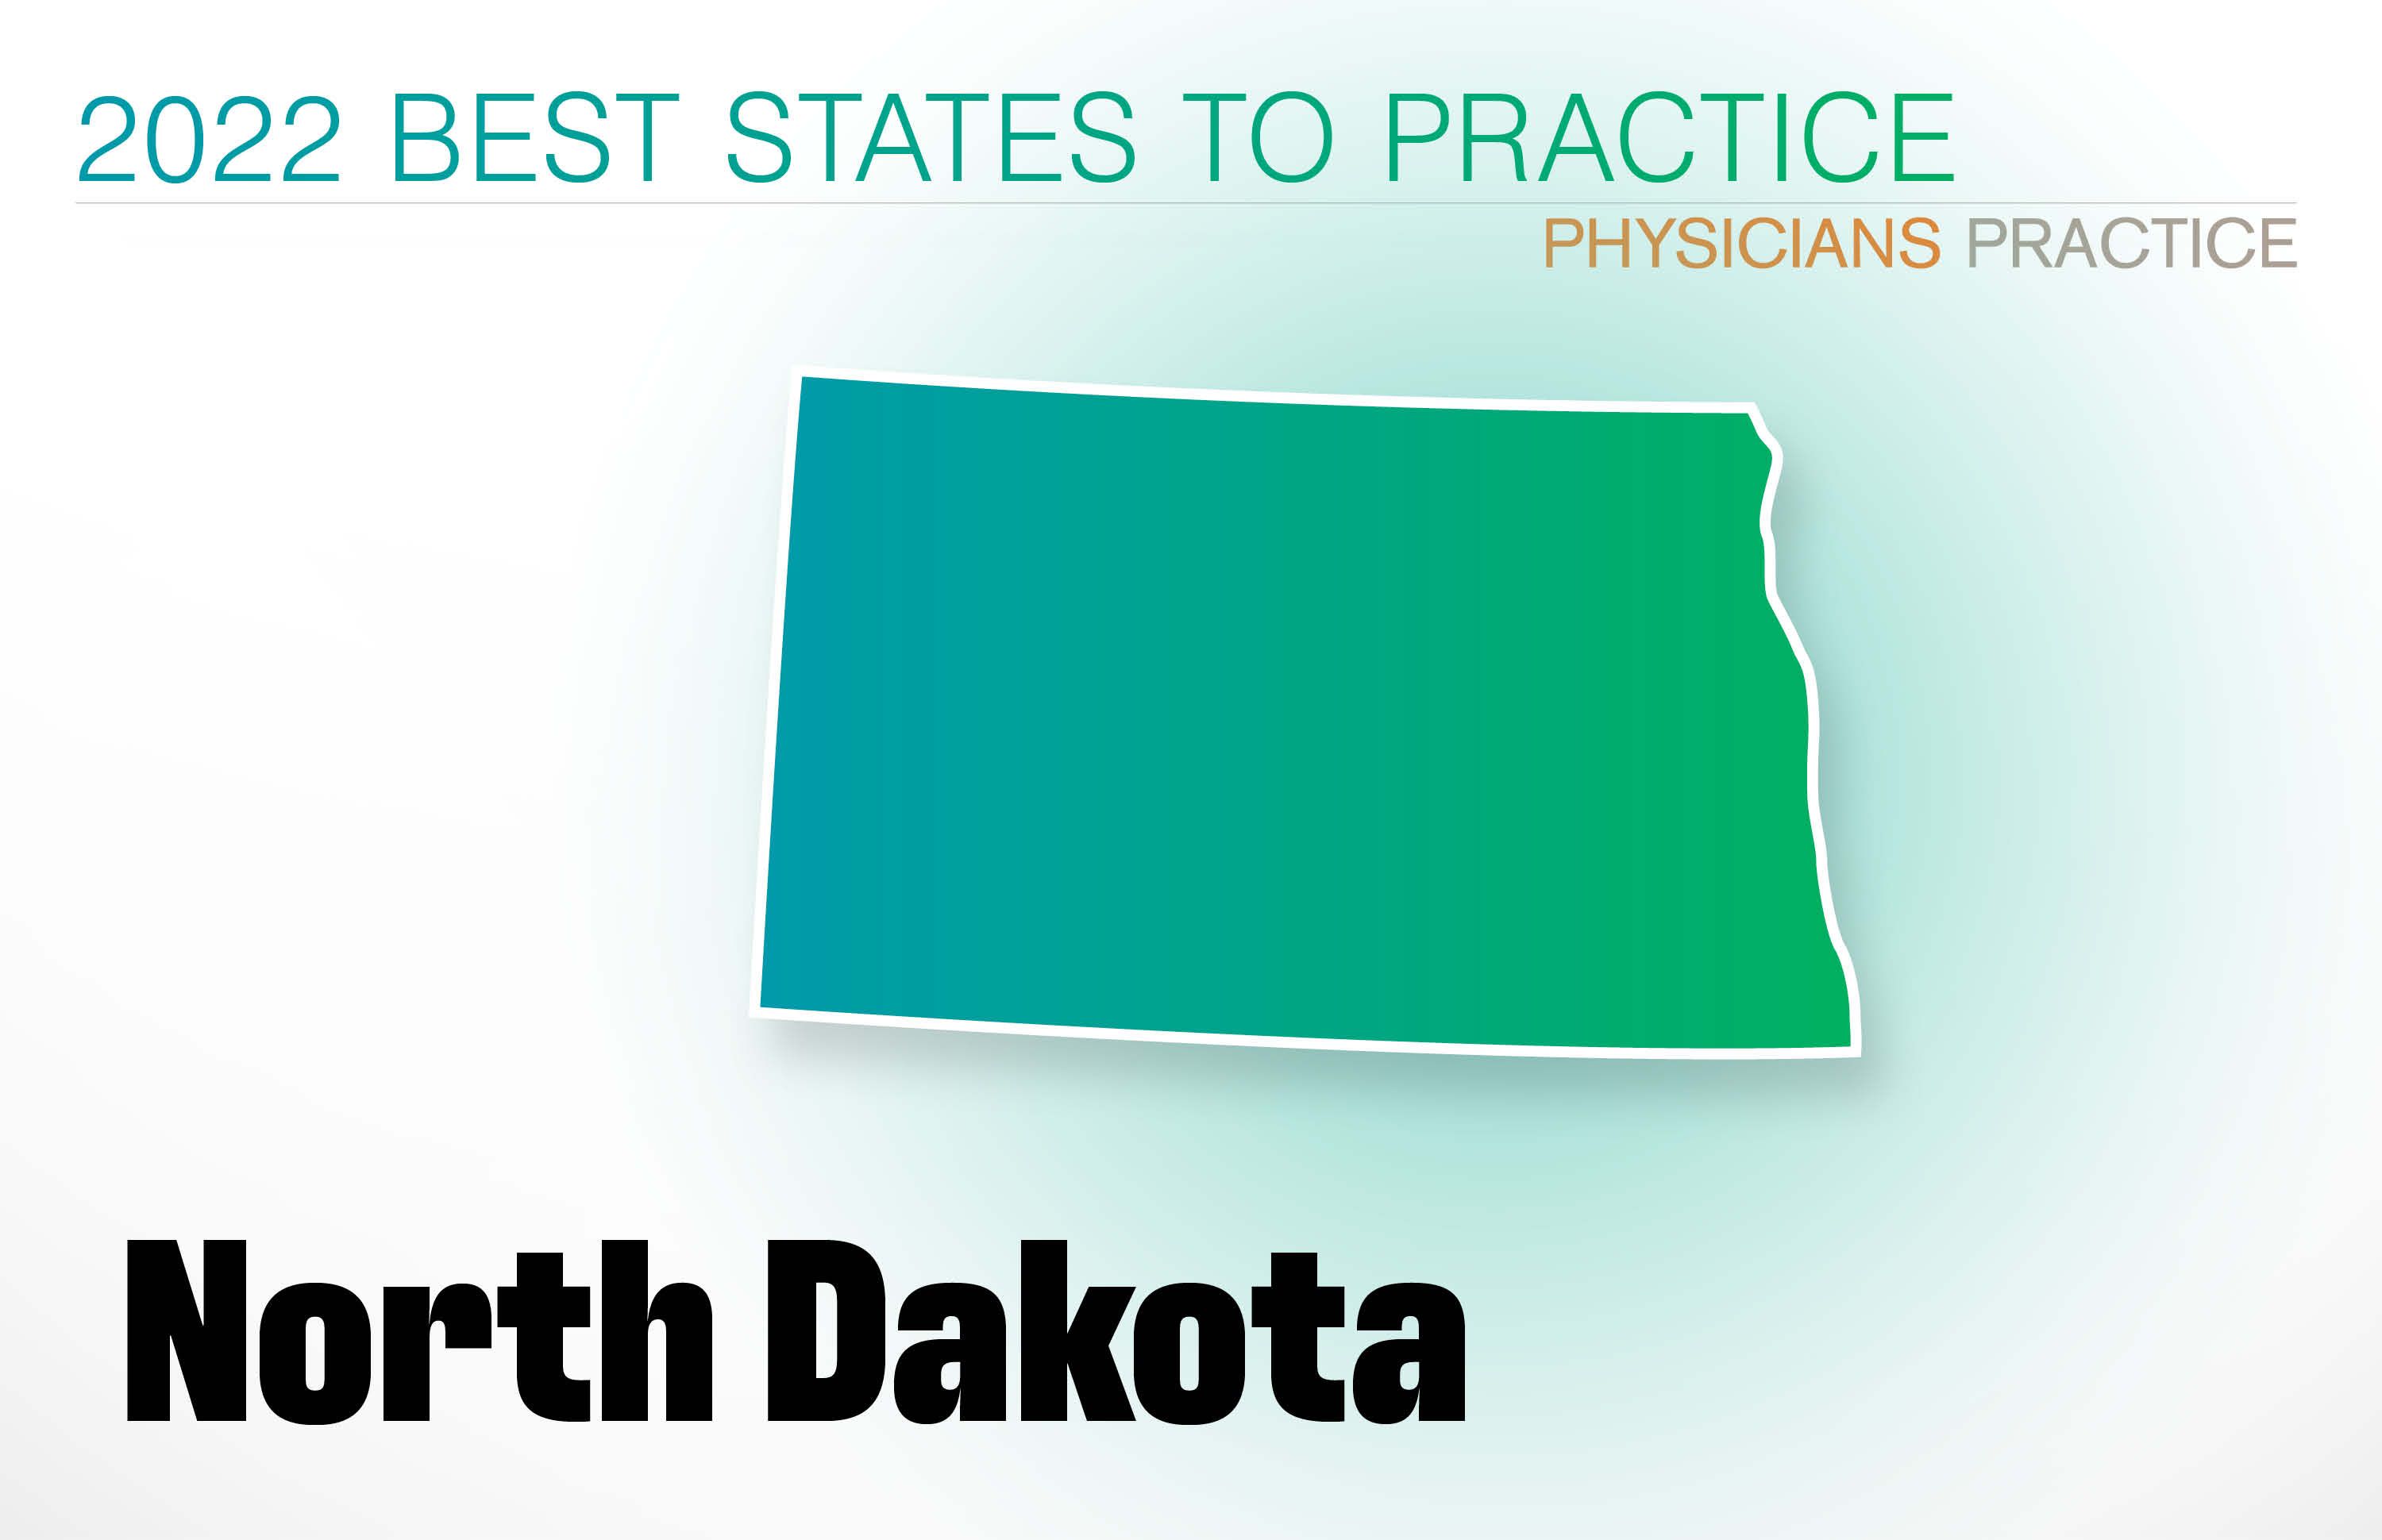 #7 North Dakota